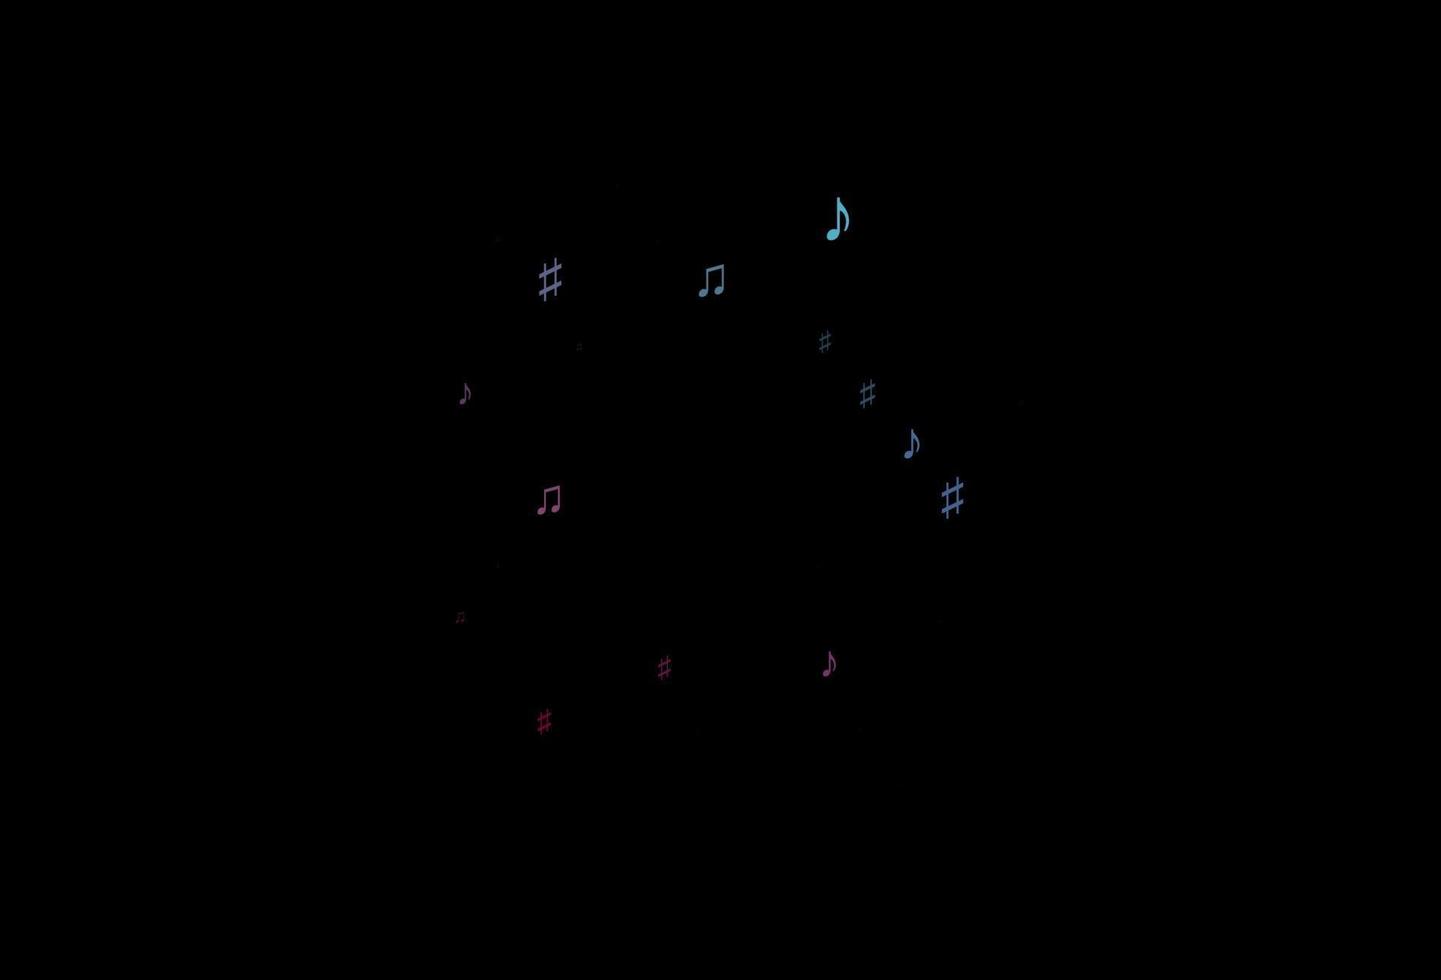 fundo vector azul escuro, vermelho com símbolos musicais.